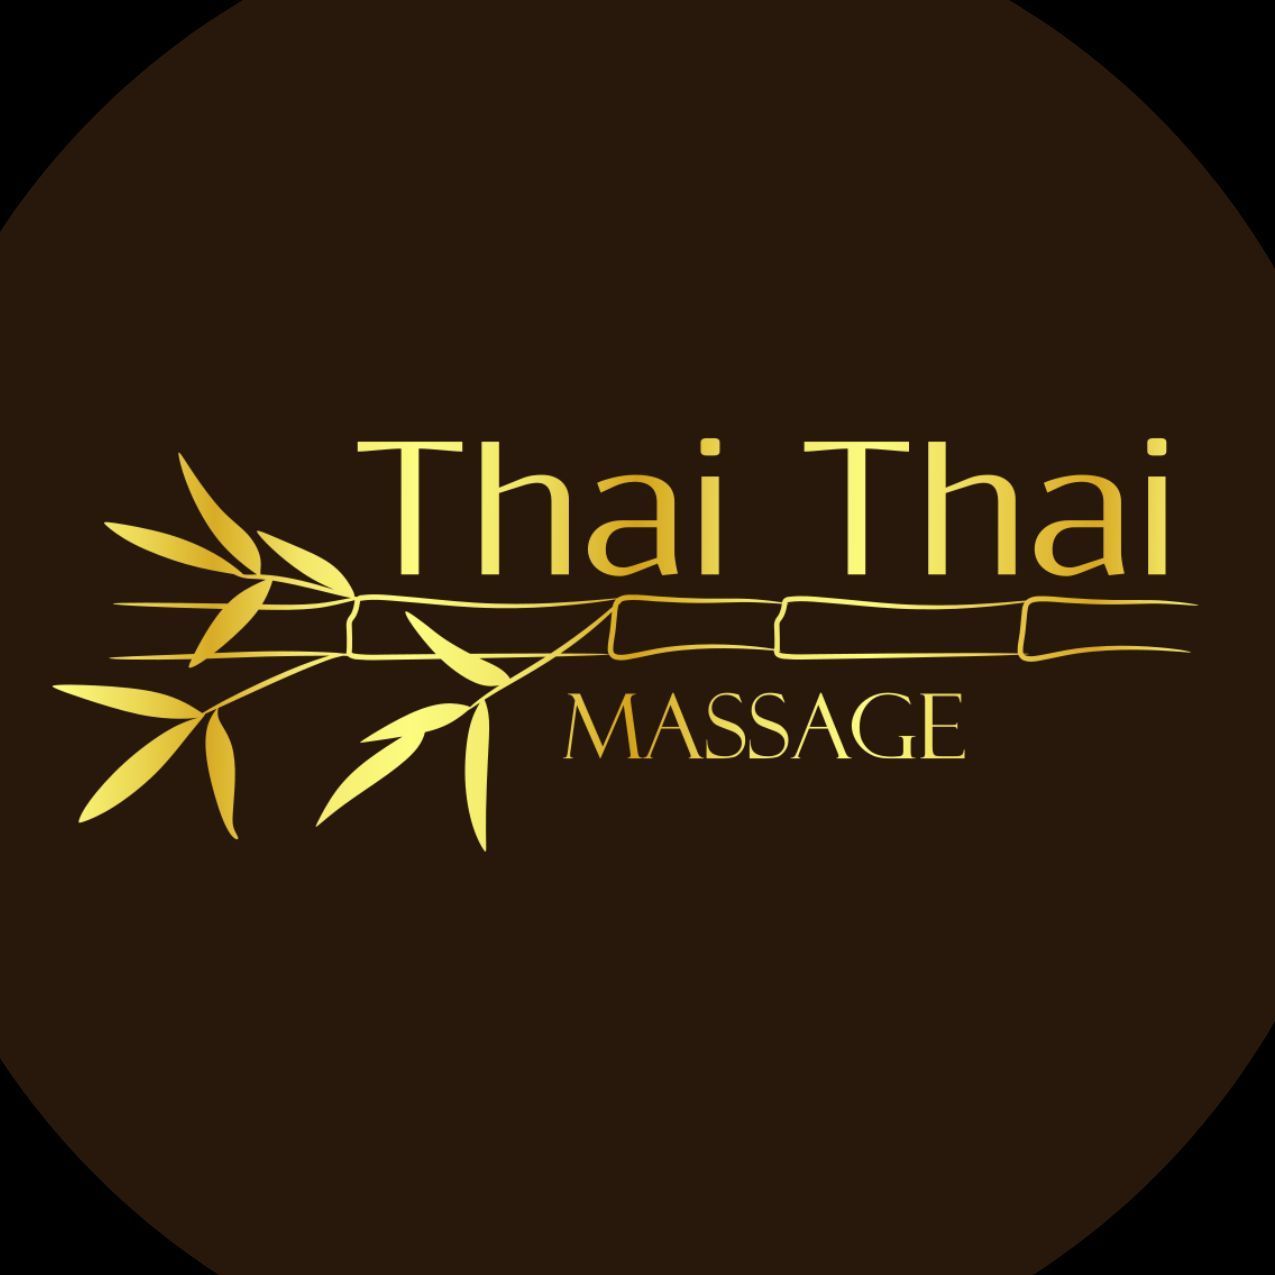 Thai Thai Massage, prof. Mariana Raciborskiego 1, A, 83-000, Pruszcz Gdański